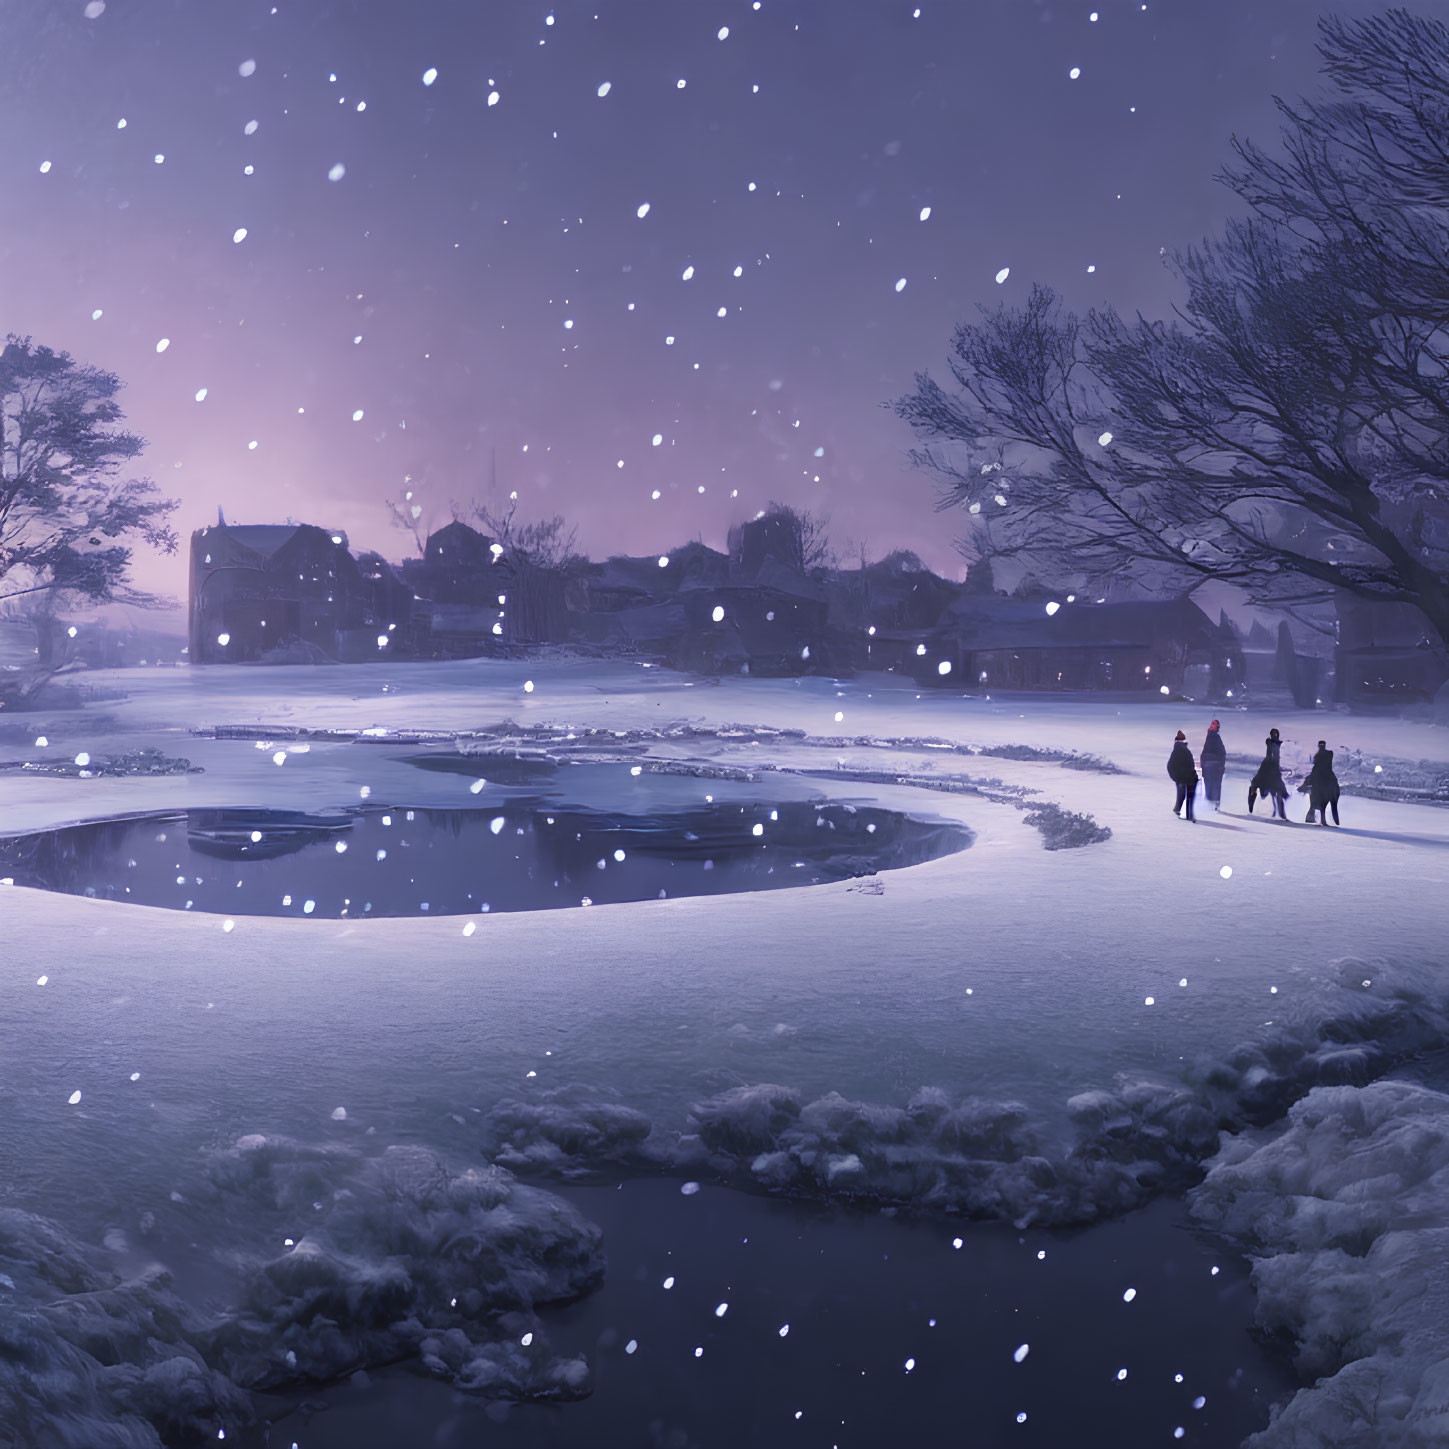 Winter Dusk Scene: People Walking by Frozen Pond in Snowfall